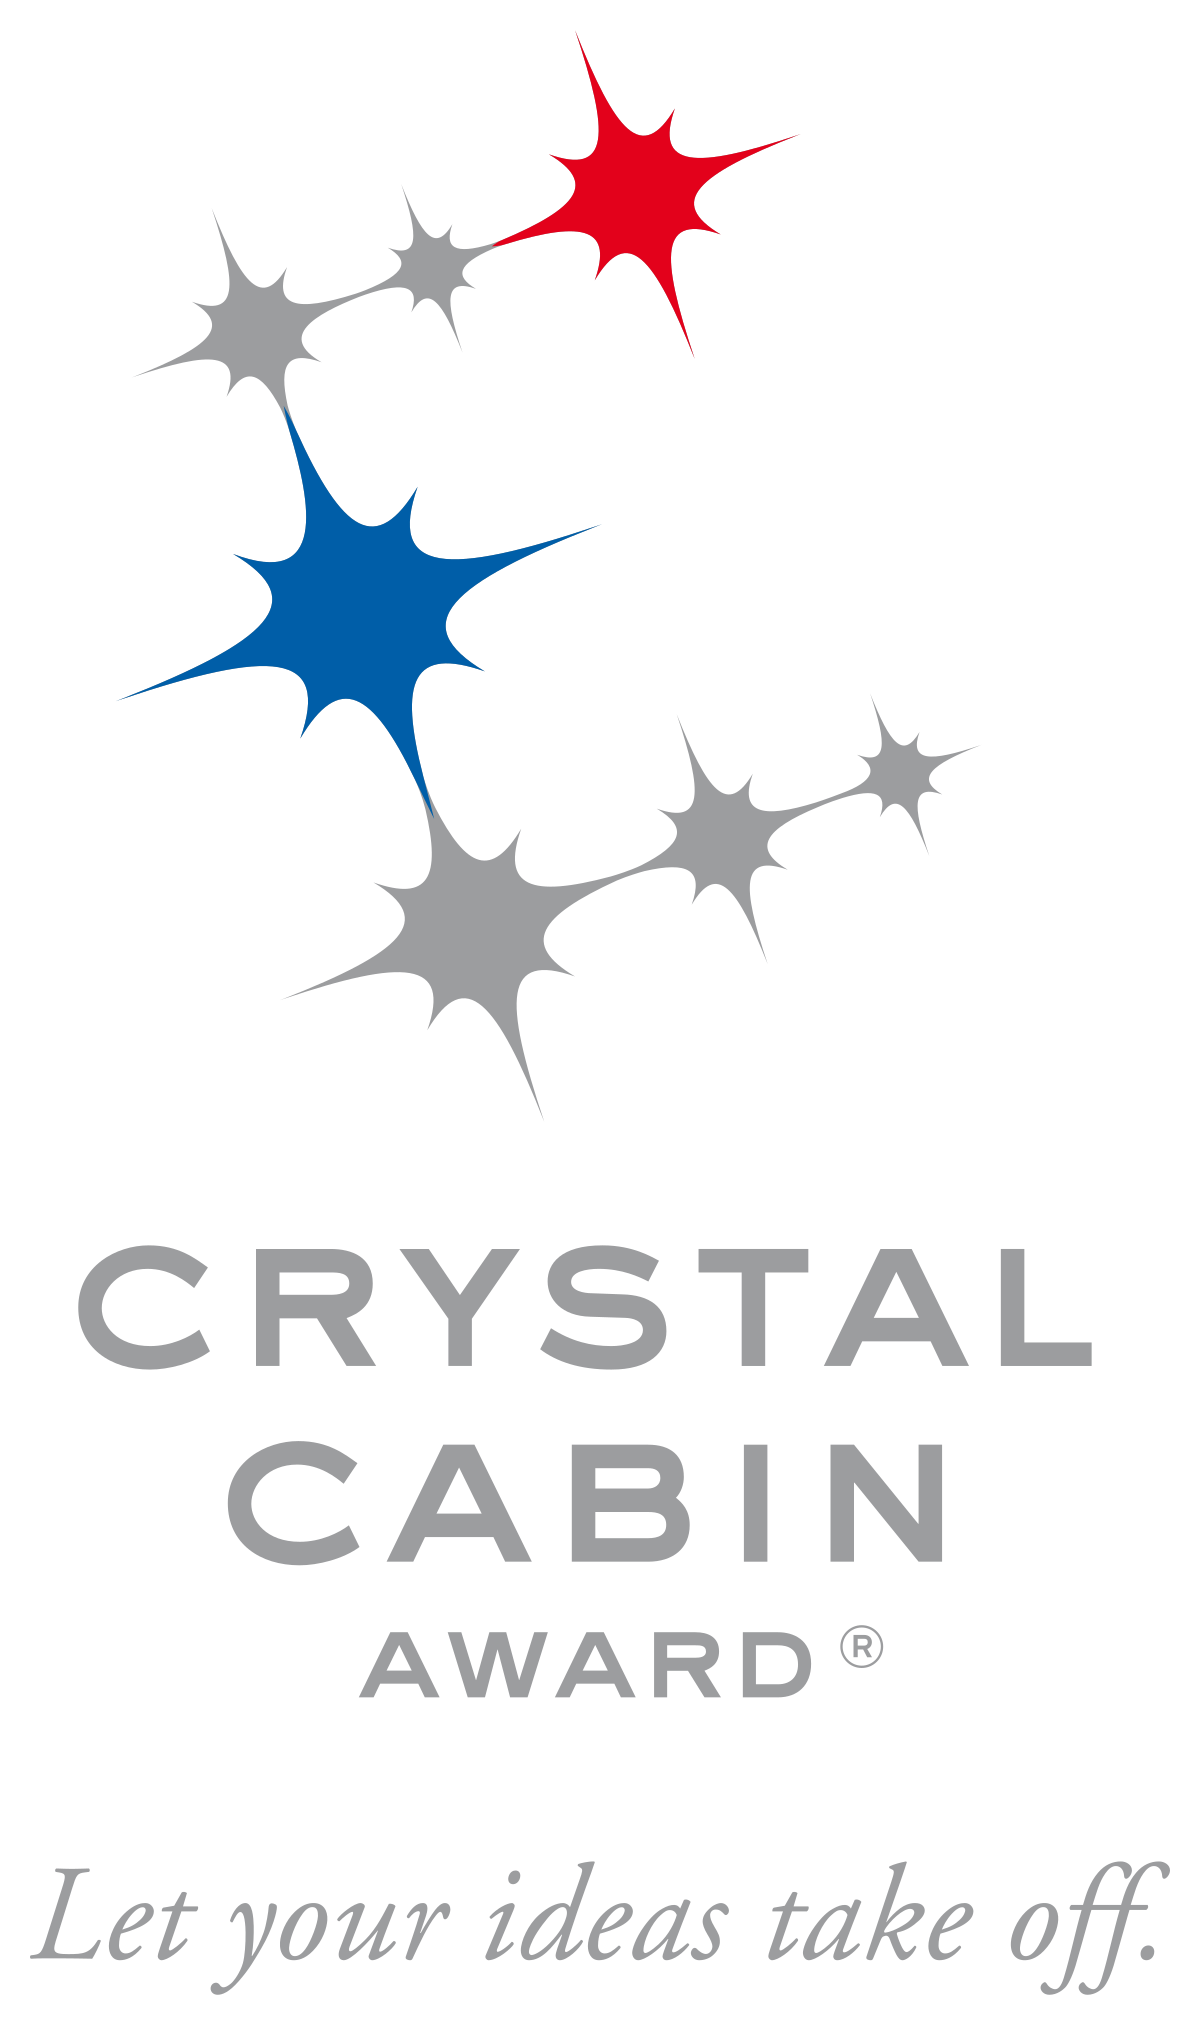 Crystal Cabin Award Wikipedia